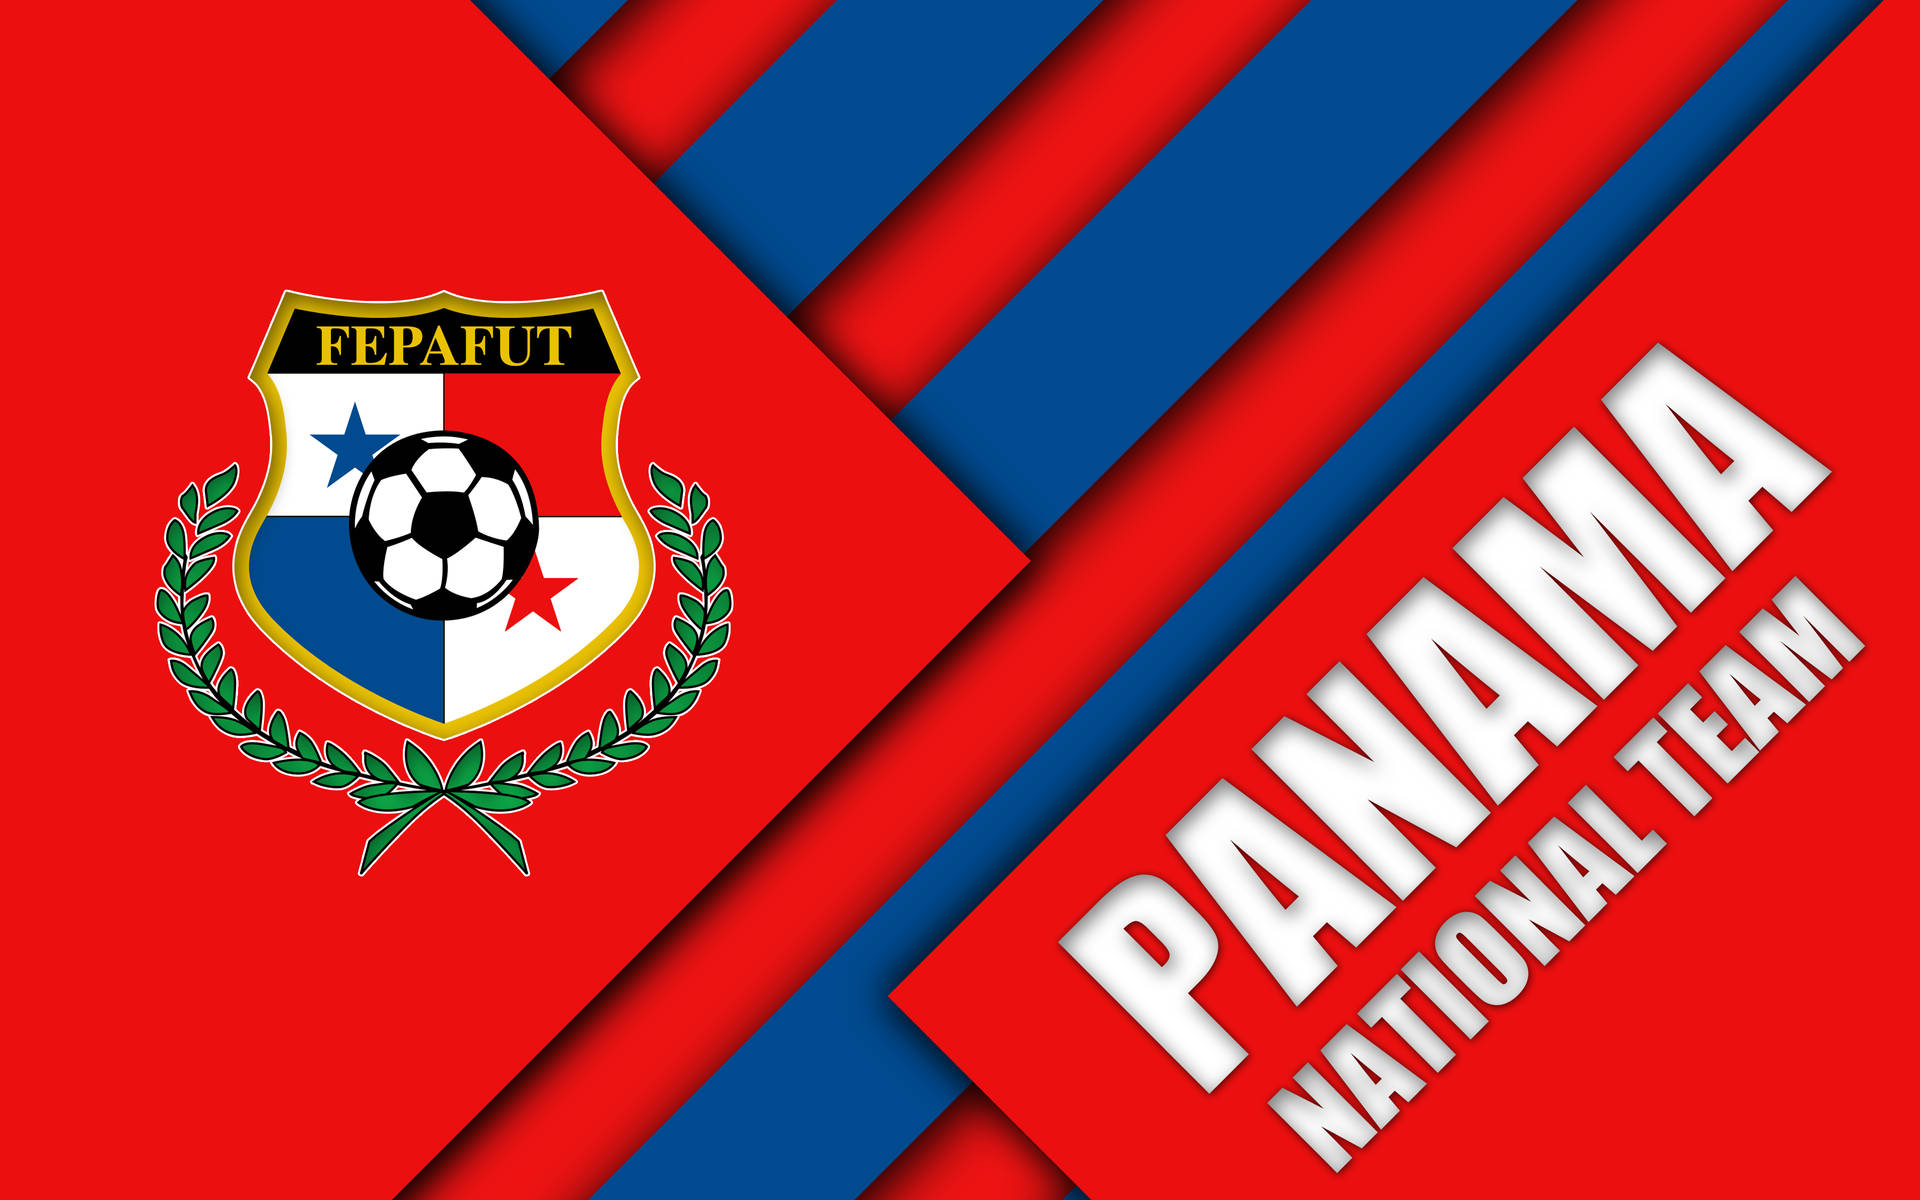 Fondode Pantalla Rojo Con Bandera De Panamá. Fondo de pantalla